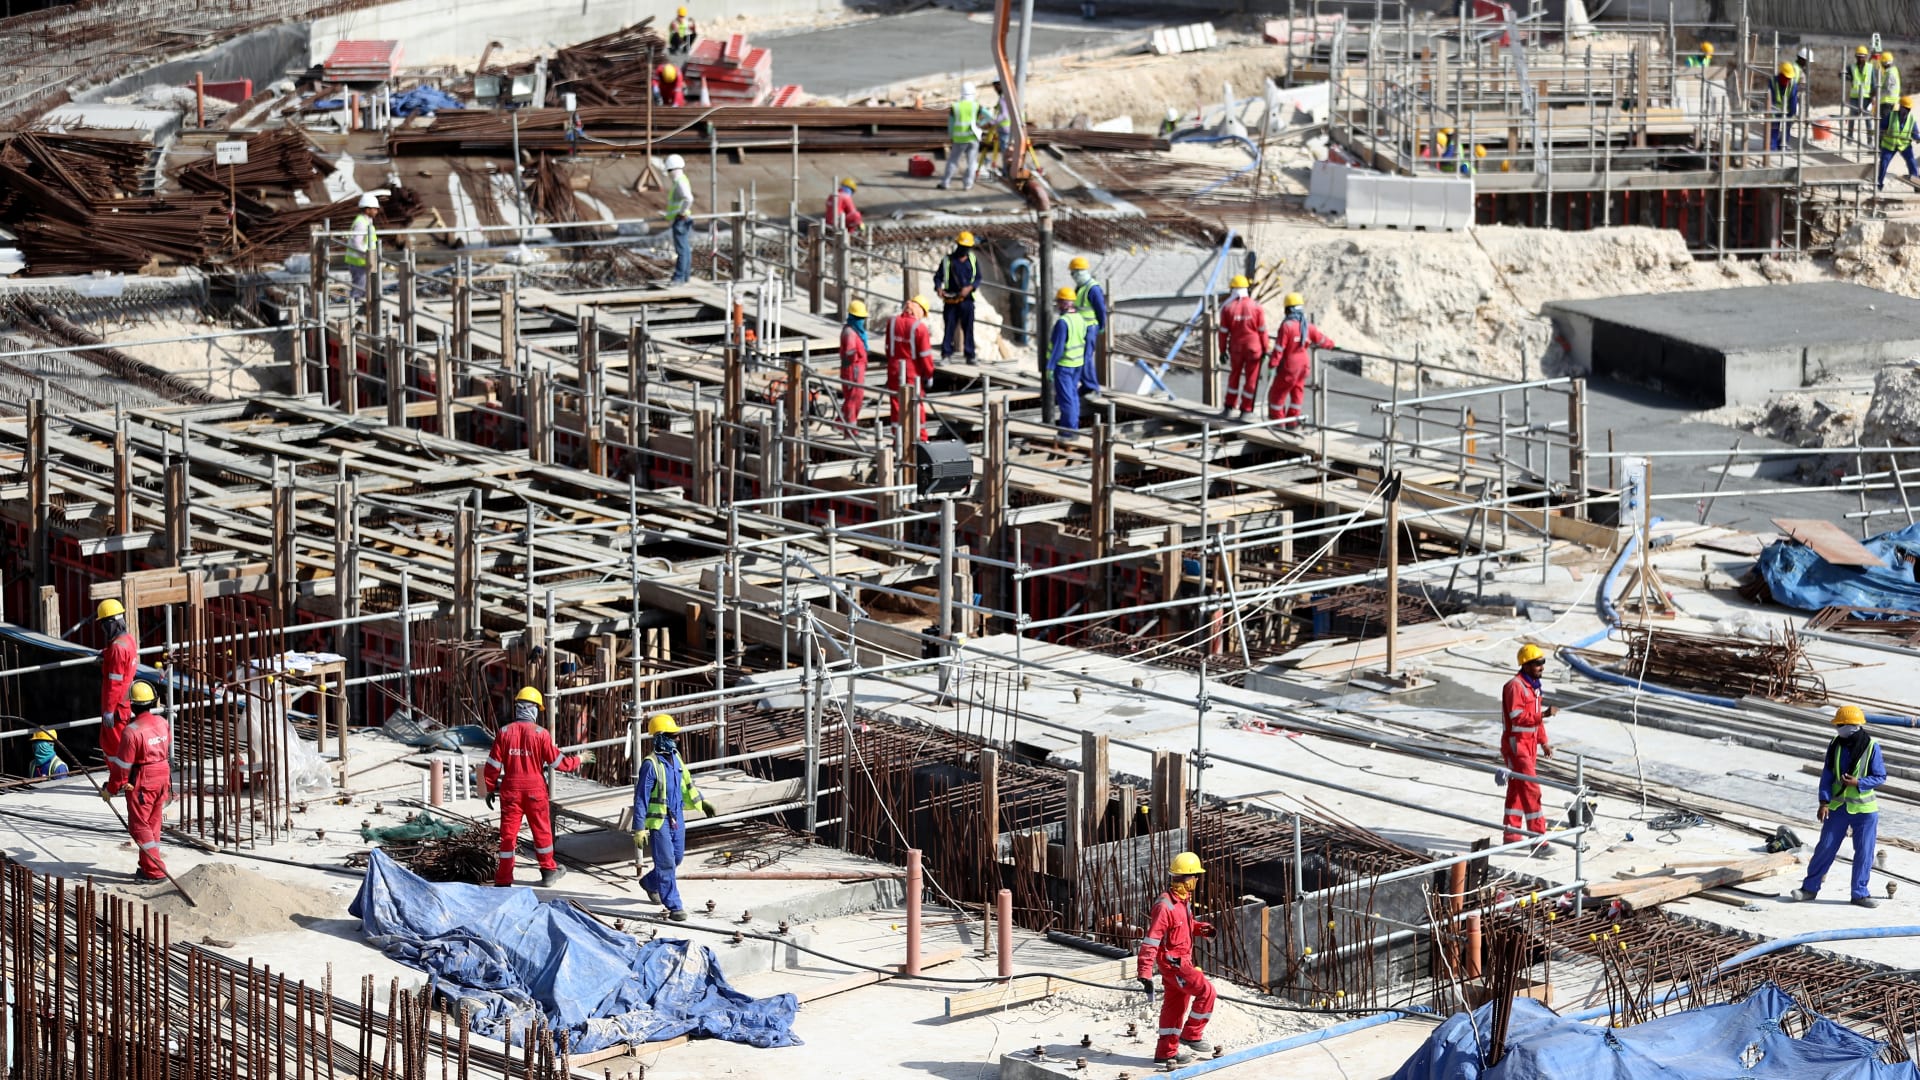 عريضة بمليون توقيع.. جماعات حقوقية تطالب بتعويض العمال المتضررين في كأس العالم في قطر